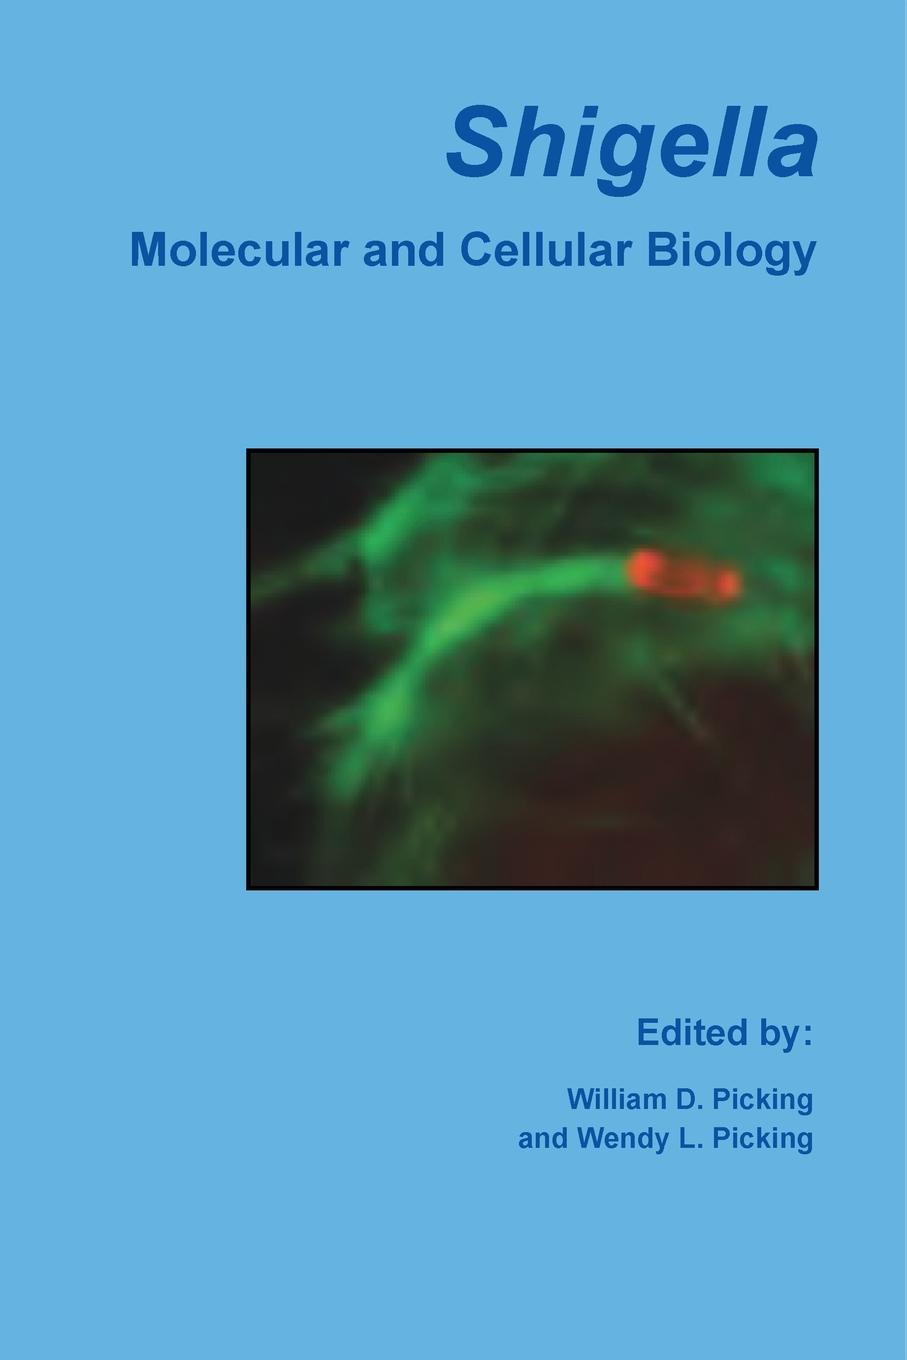 Shigella: Molecular and Cellular Biology